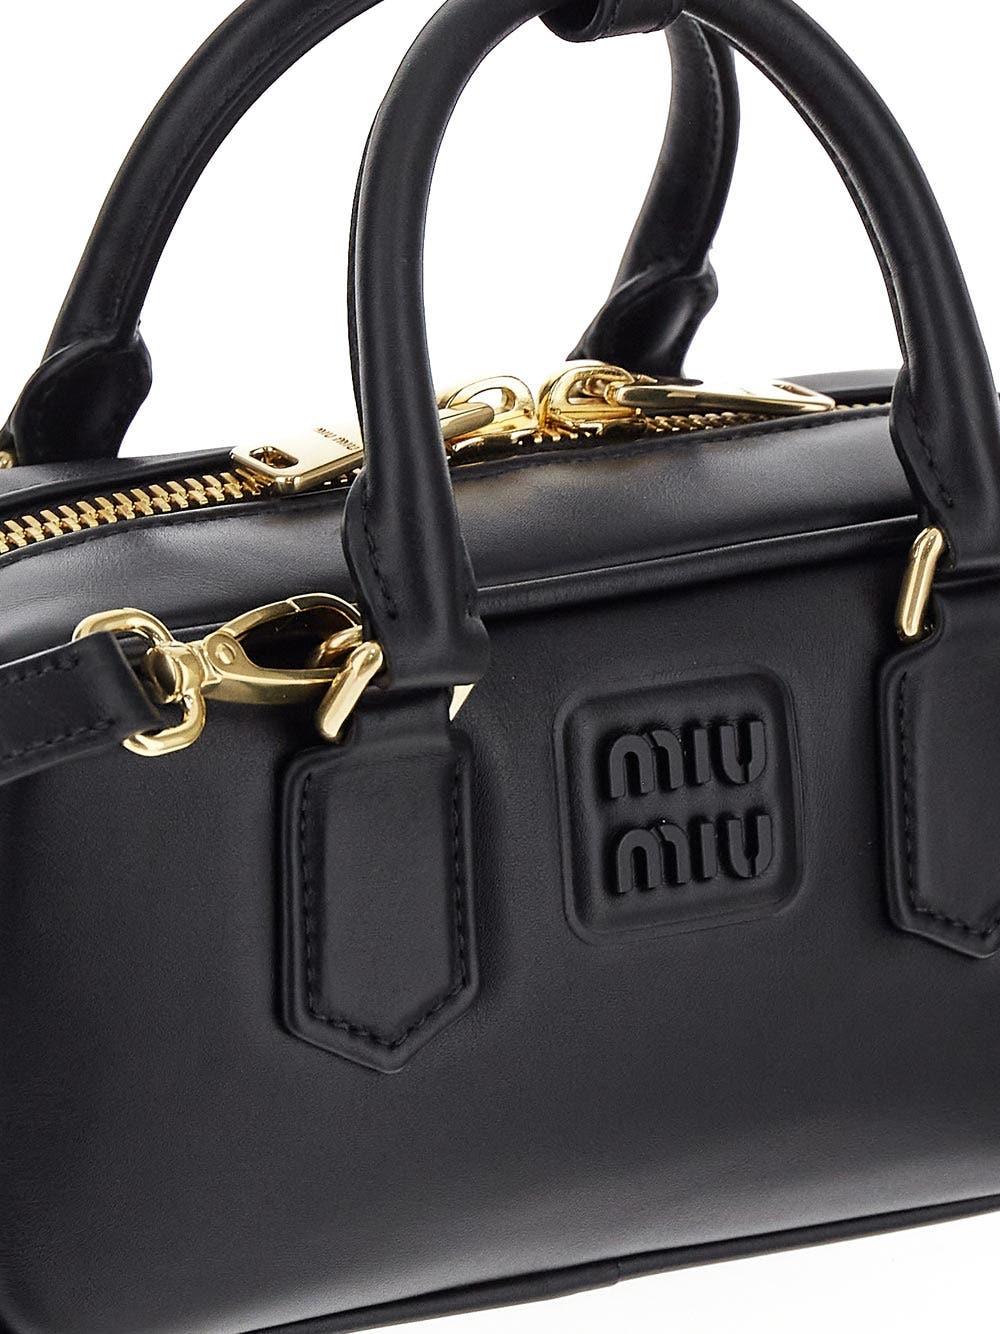 Miu Miu Leather Top-handle Bag in Black | Lyst UK